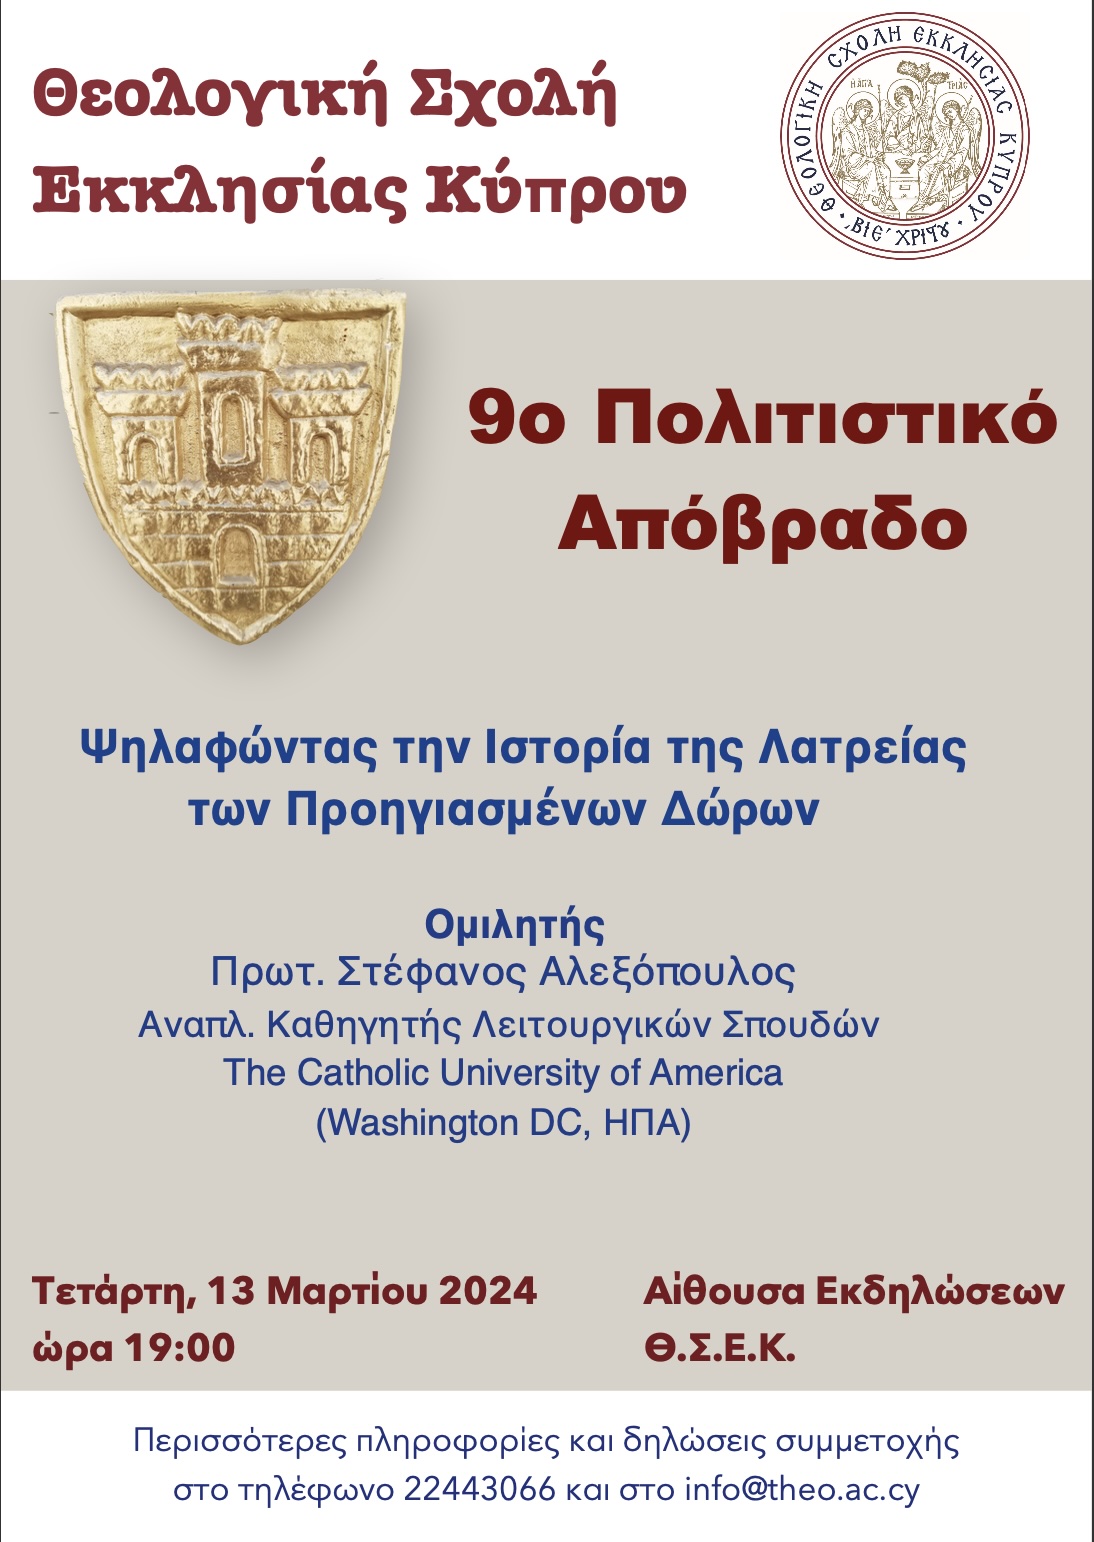 9ο Πολιτιστικό Απόβραδο Θεολογικής Σχολής Εκκλησίας Κύπρου (Τετάρτη, 13 Μαρτίου 2024)